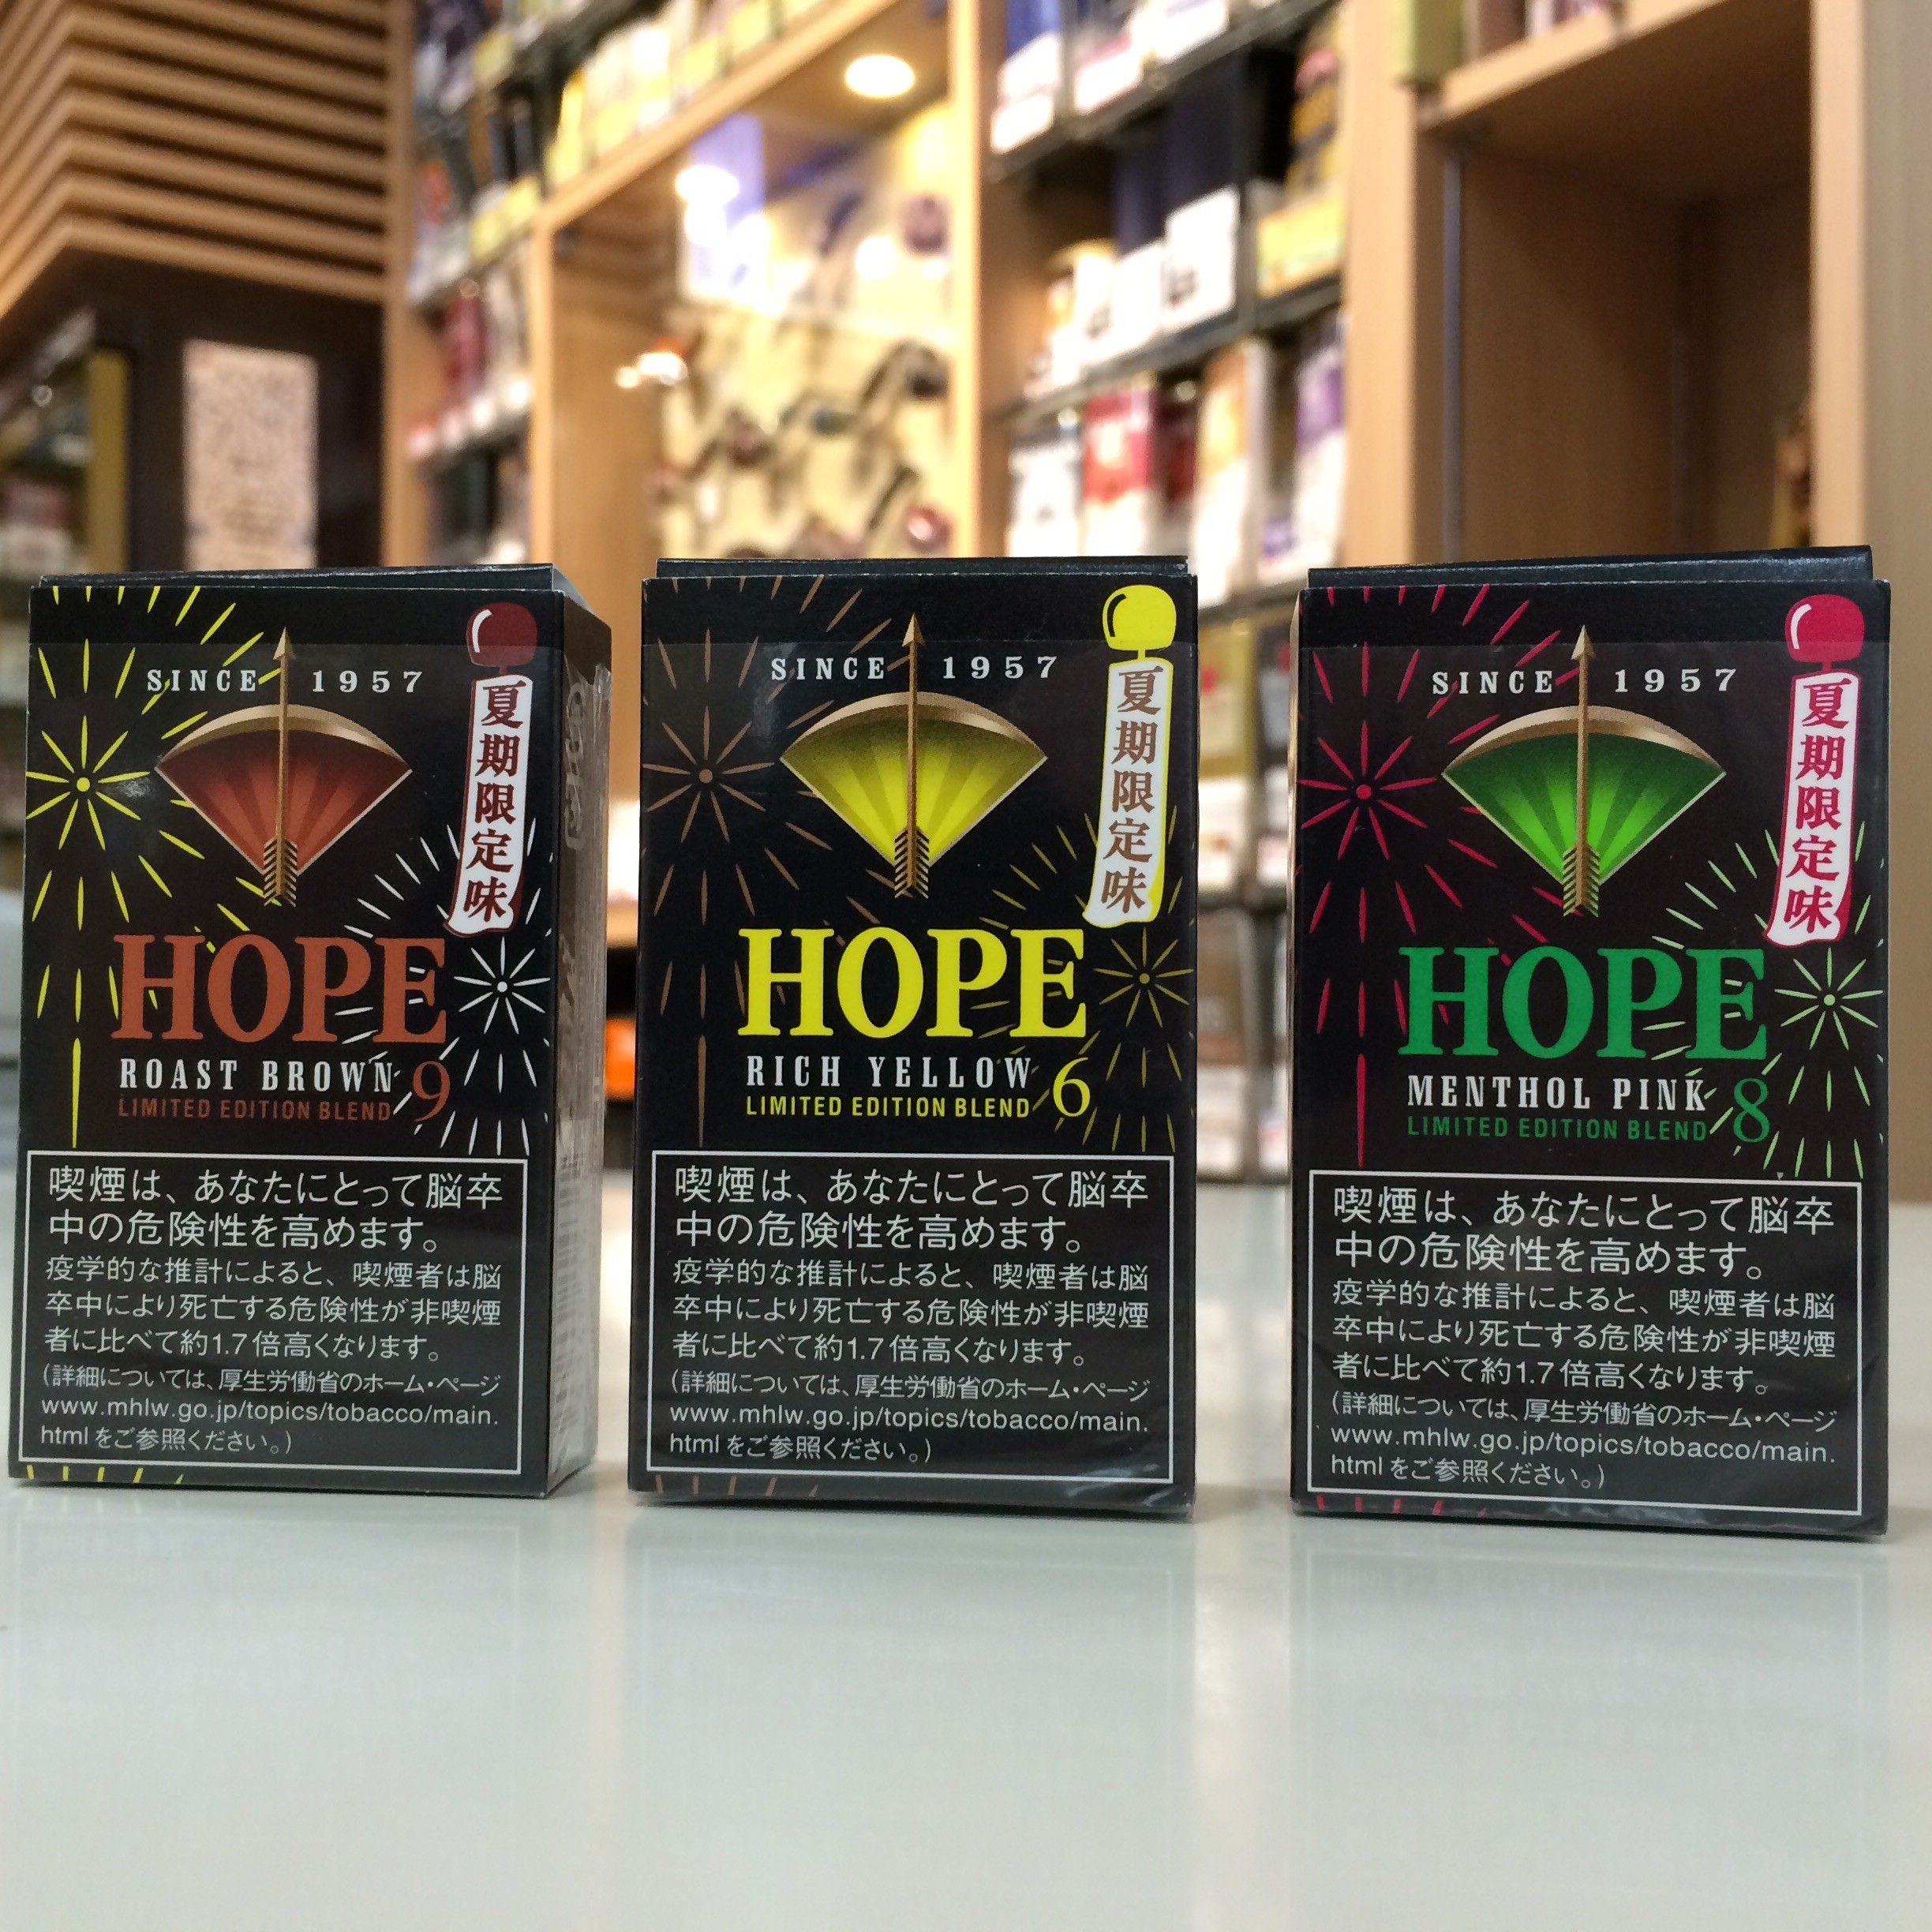 紙巻タバコ Hope から 夏期限定味 の３銘柄が発売されます 三鷹駅南口 シガーショップみわた